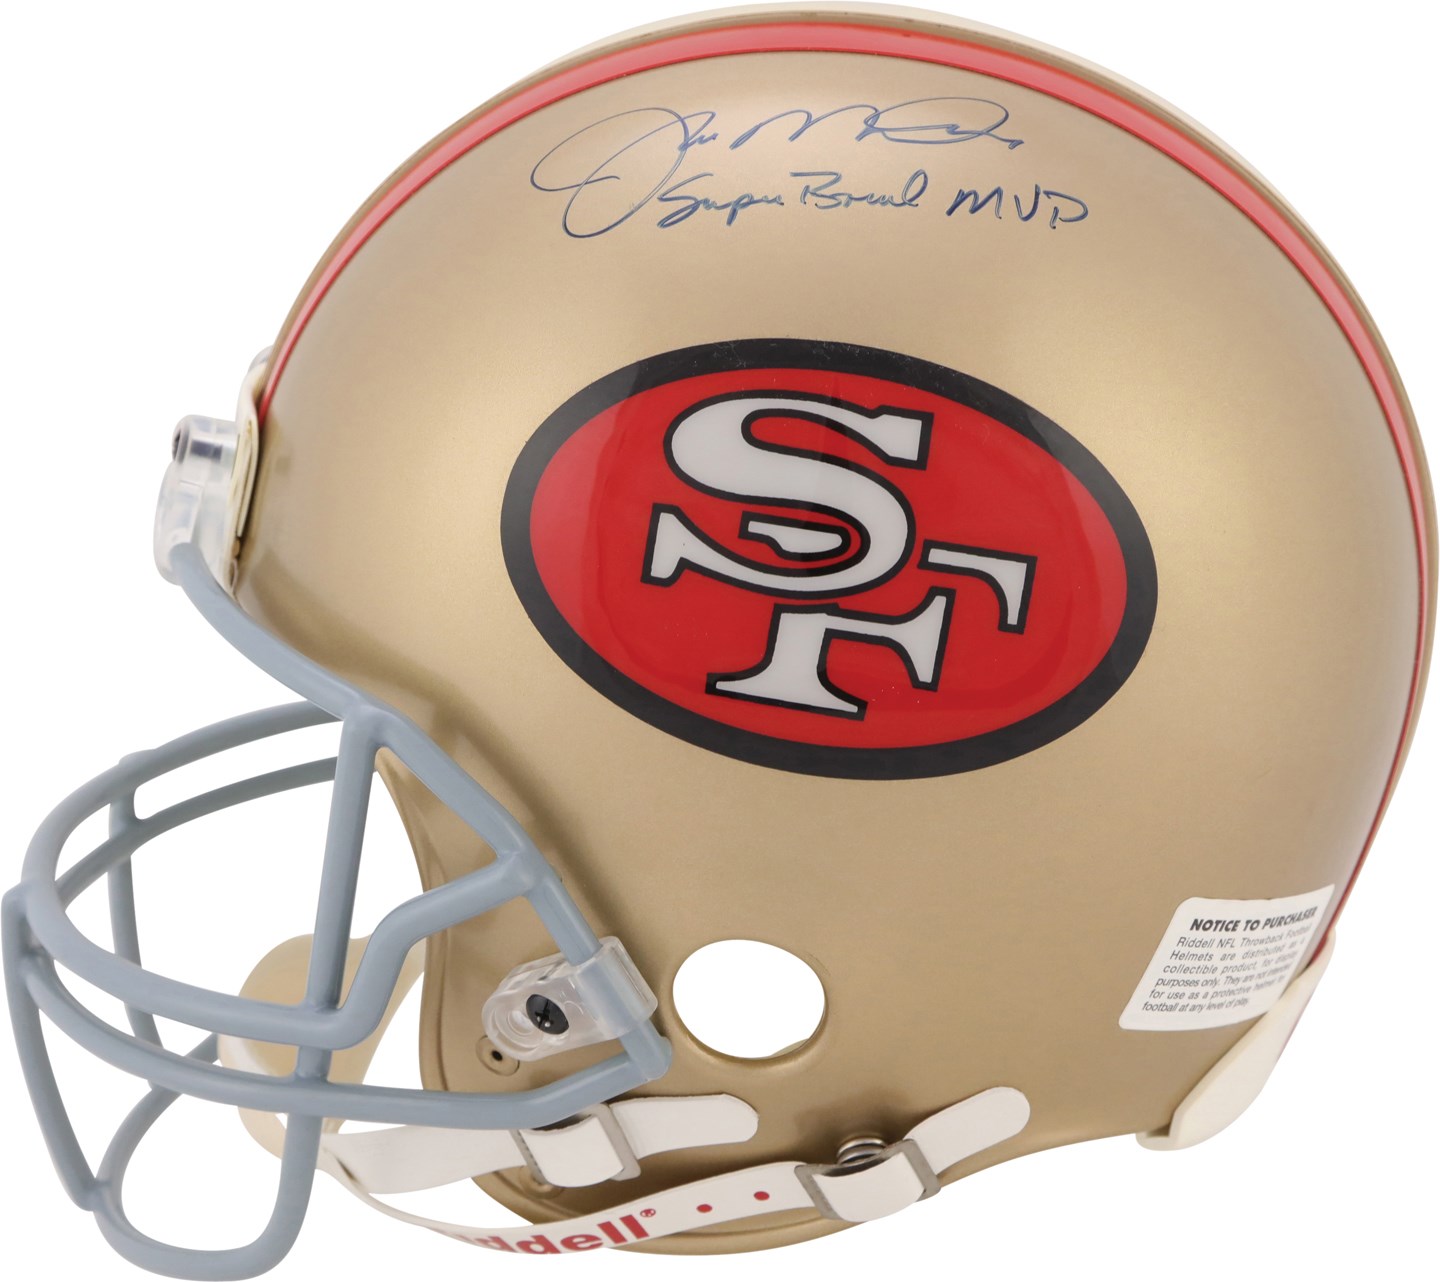 - Joe Montana "Super Bowl MVP" Signed Full Size Helmet